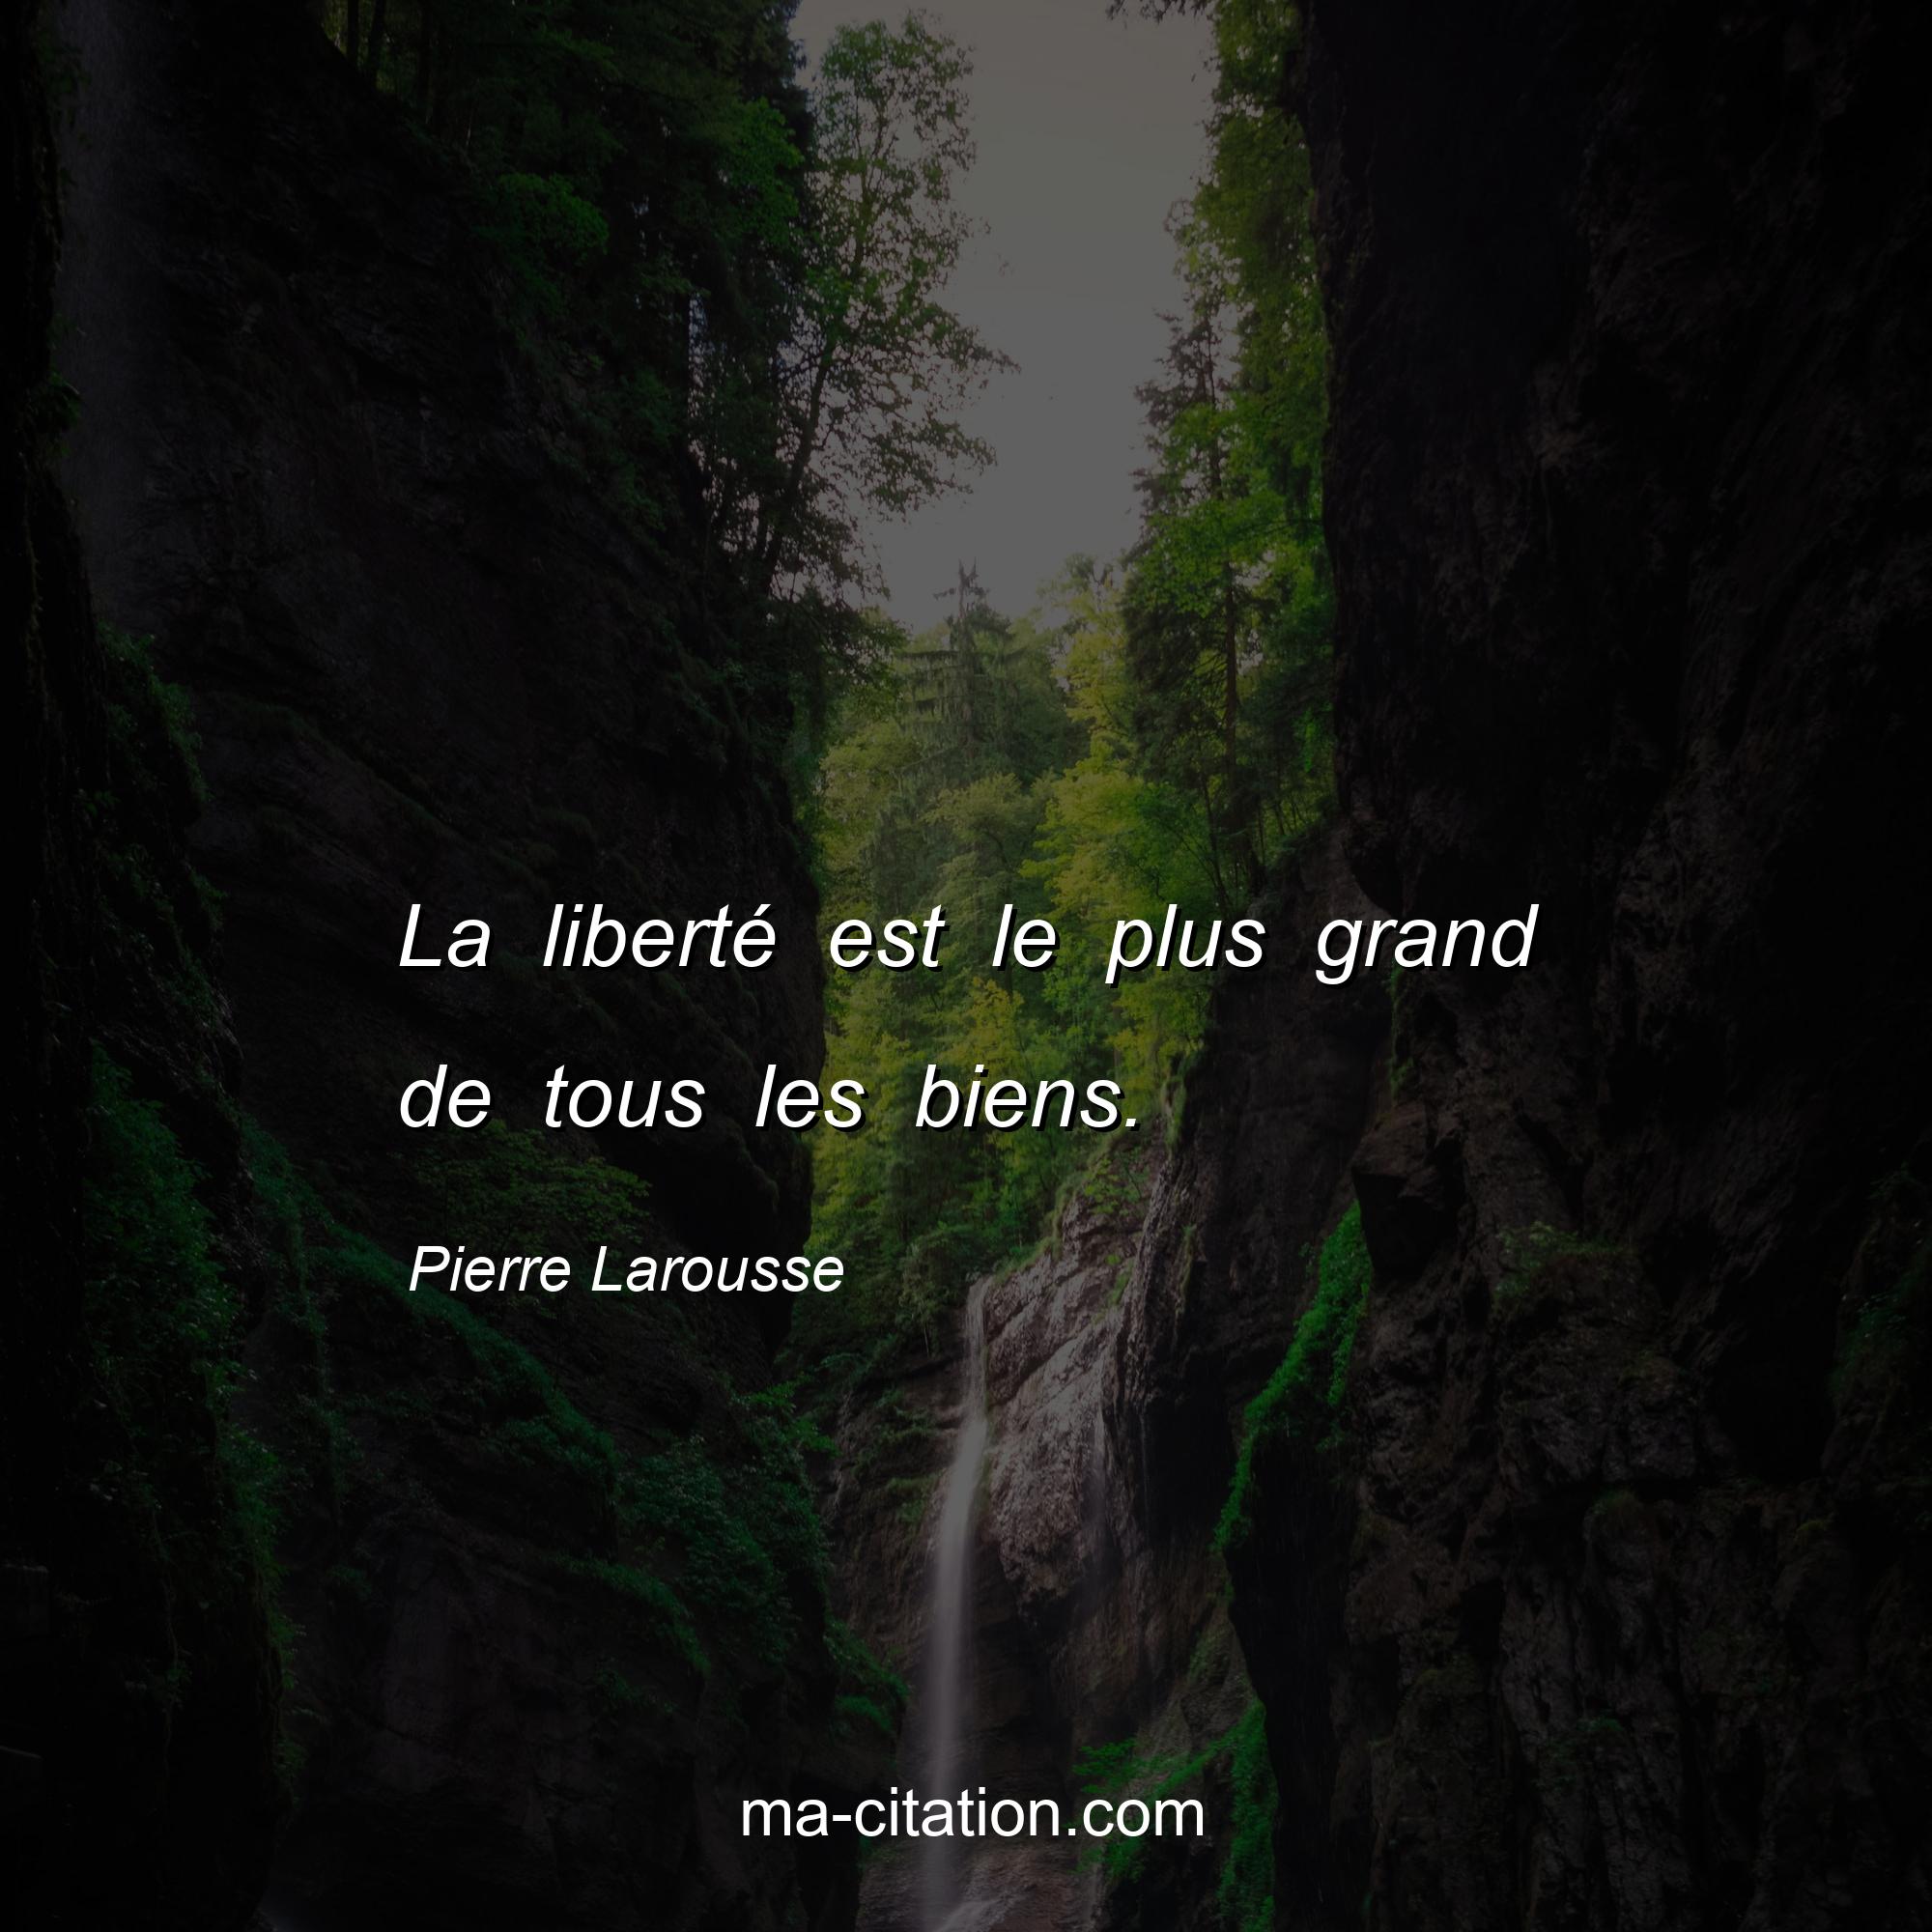 Pierre Larousse : La liberté est le plus grand de tous les biens.